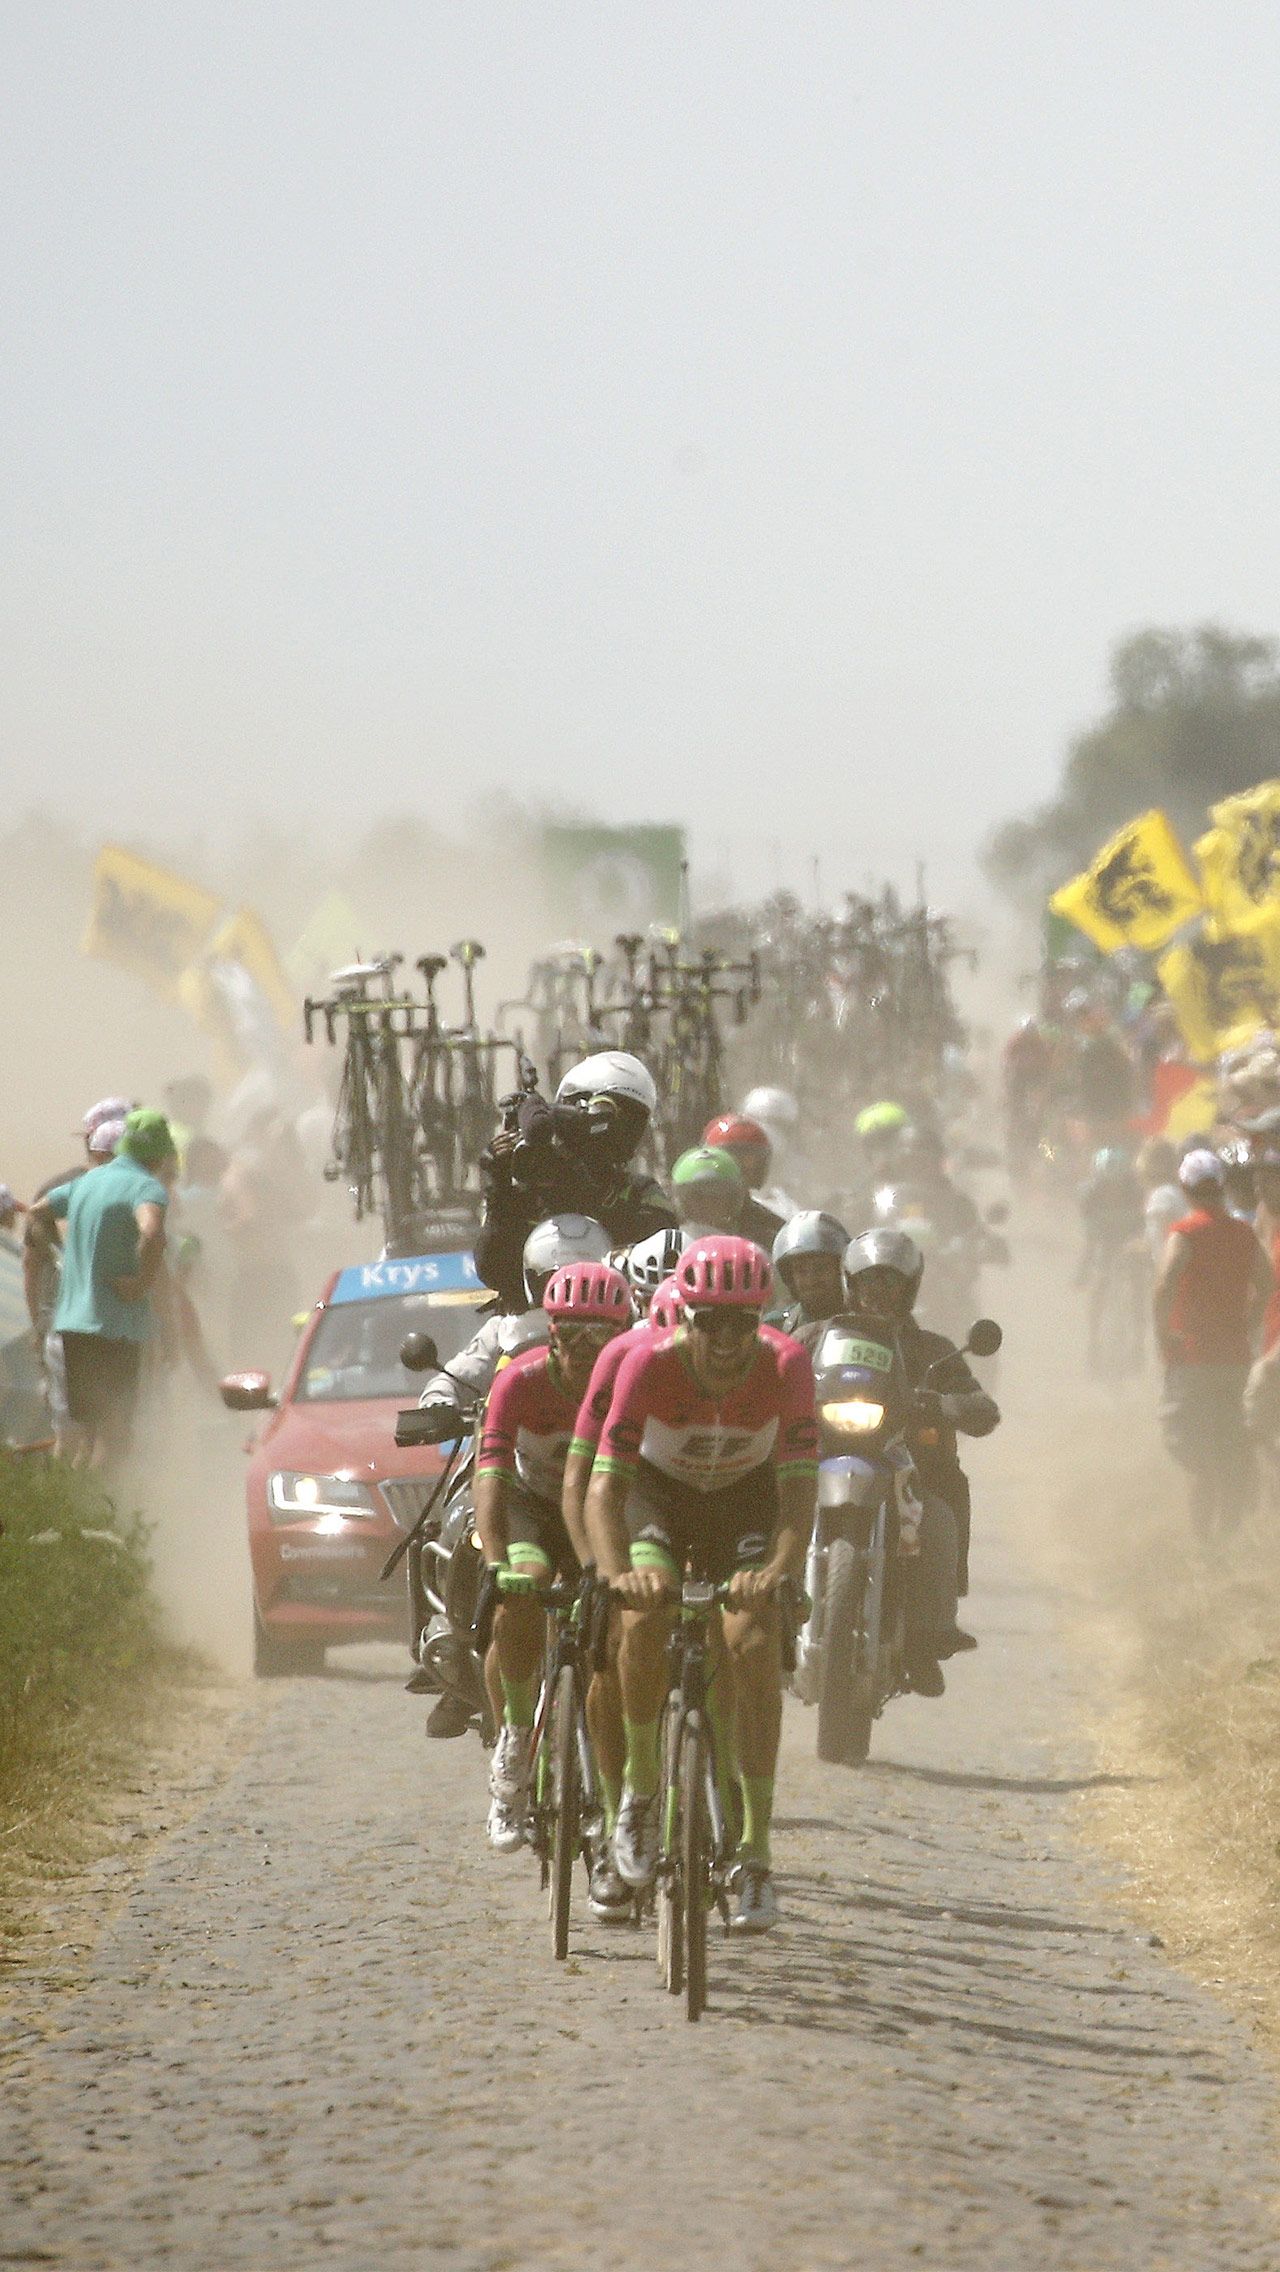 В 2018-м трассу «Тур де Франс» стогами сена вновь перекрыли французские фермеры, которые были недовольны политикой властей. Полиции пришлось применить слезоточивый газ, досталось даже участникам гонки.